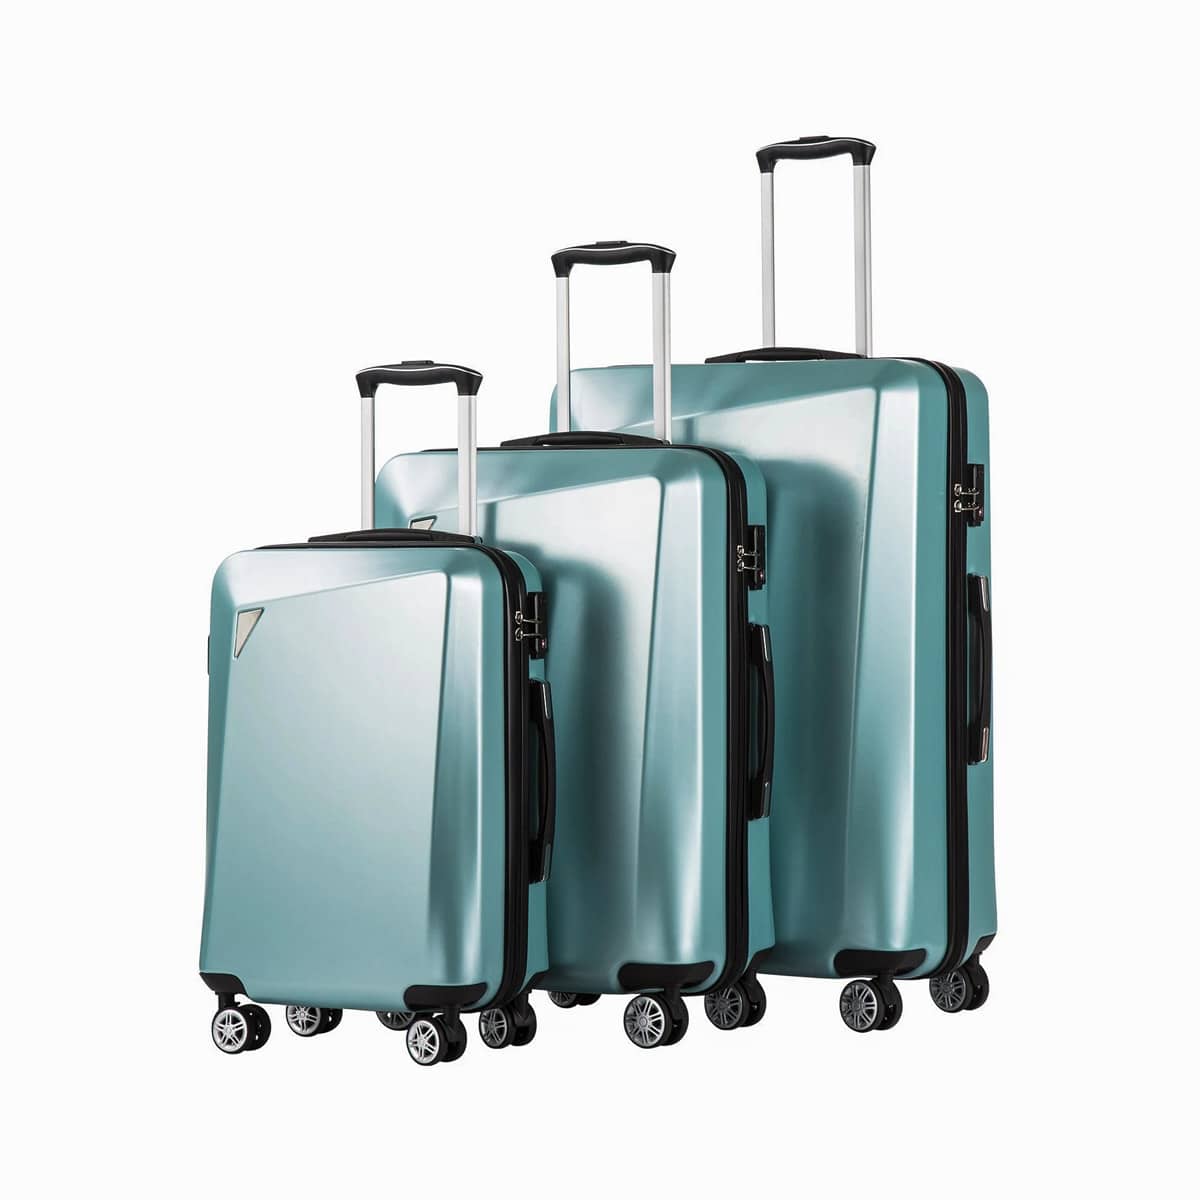 Best luggage set on Amazon